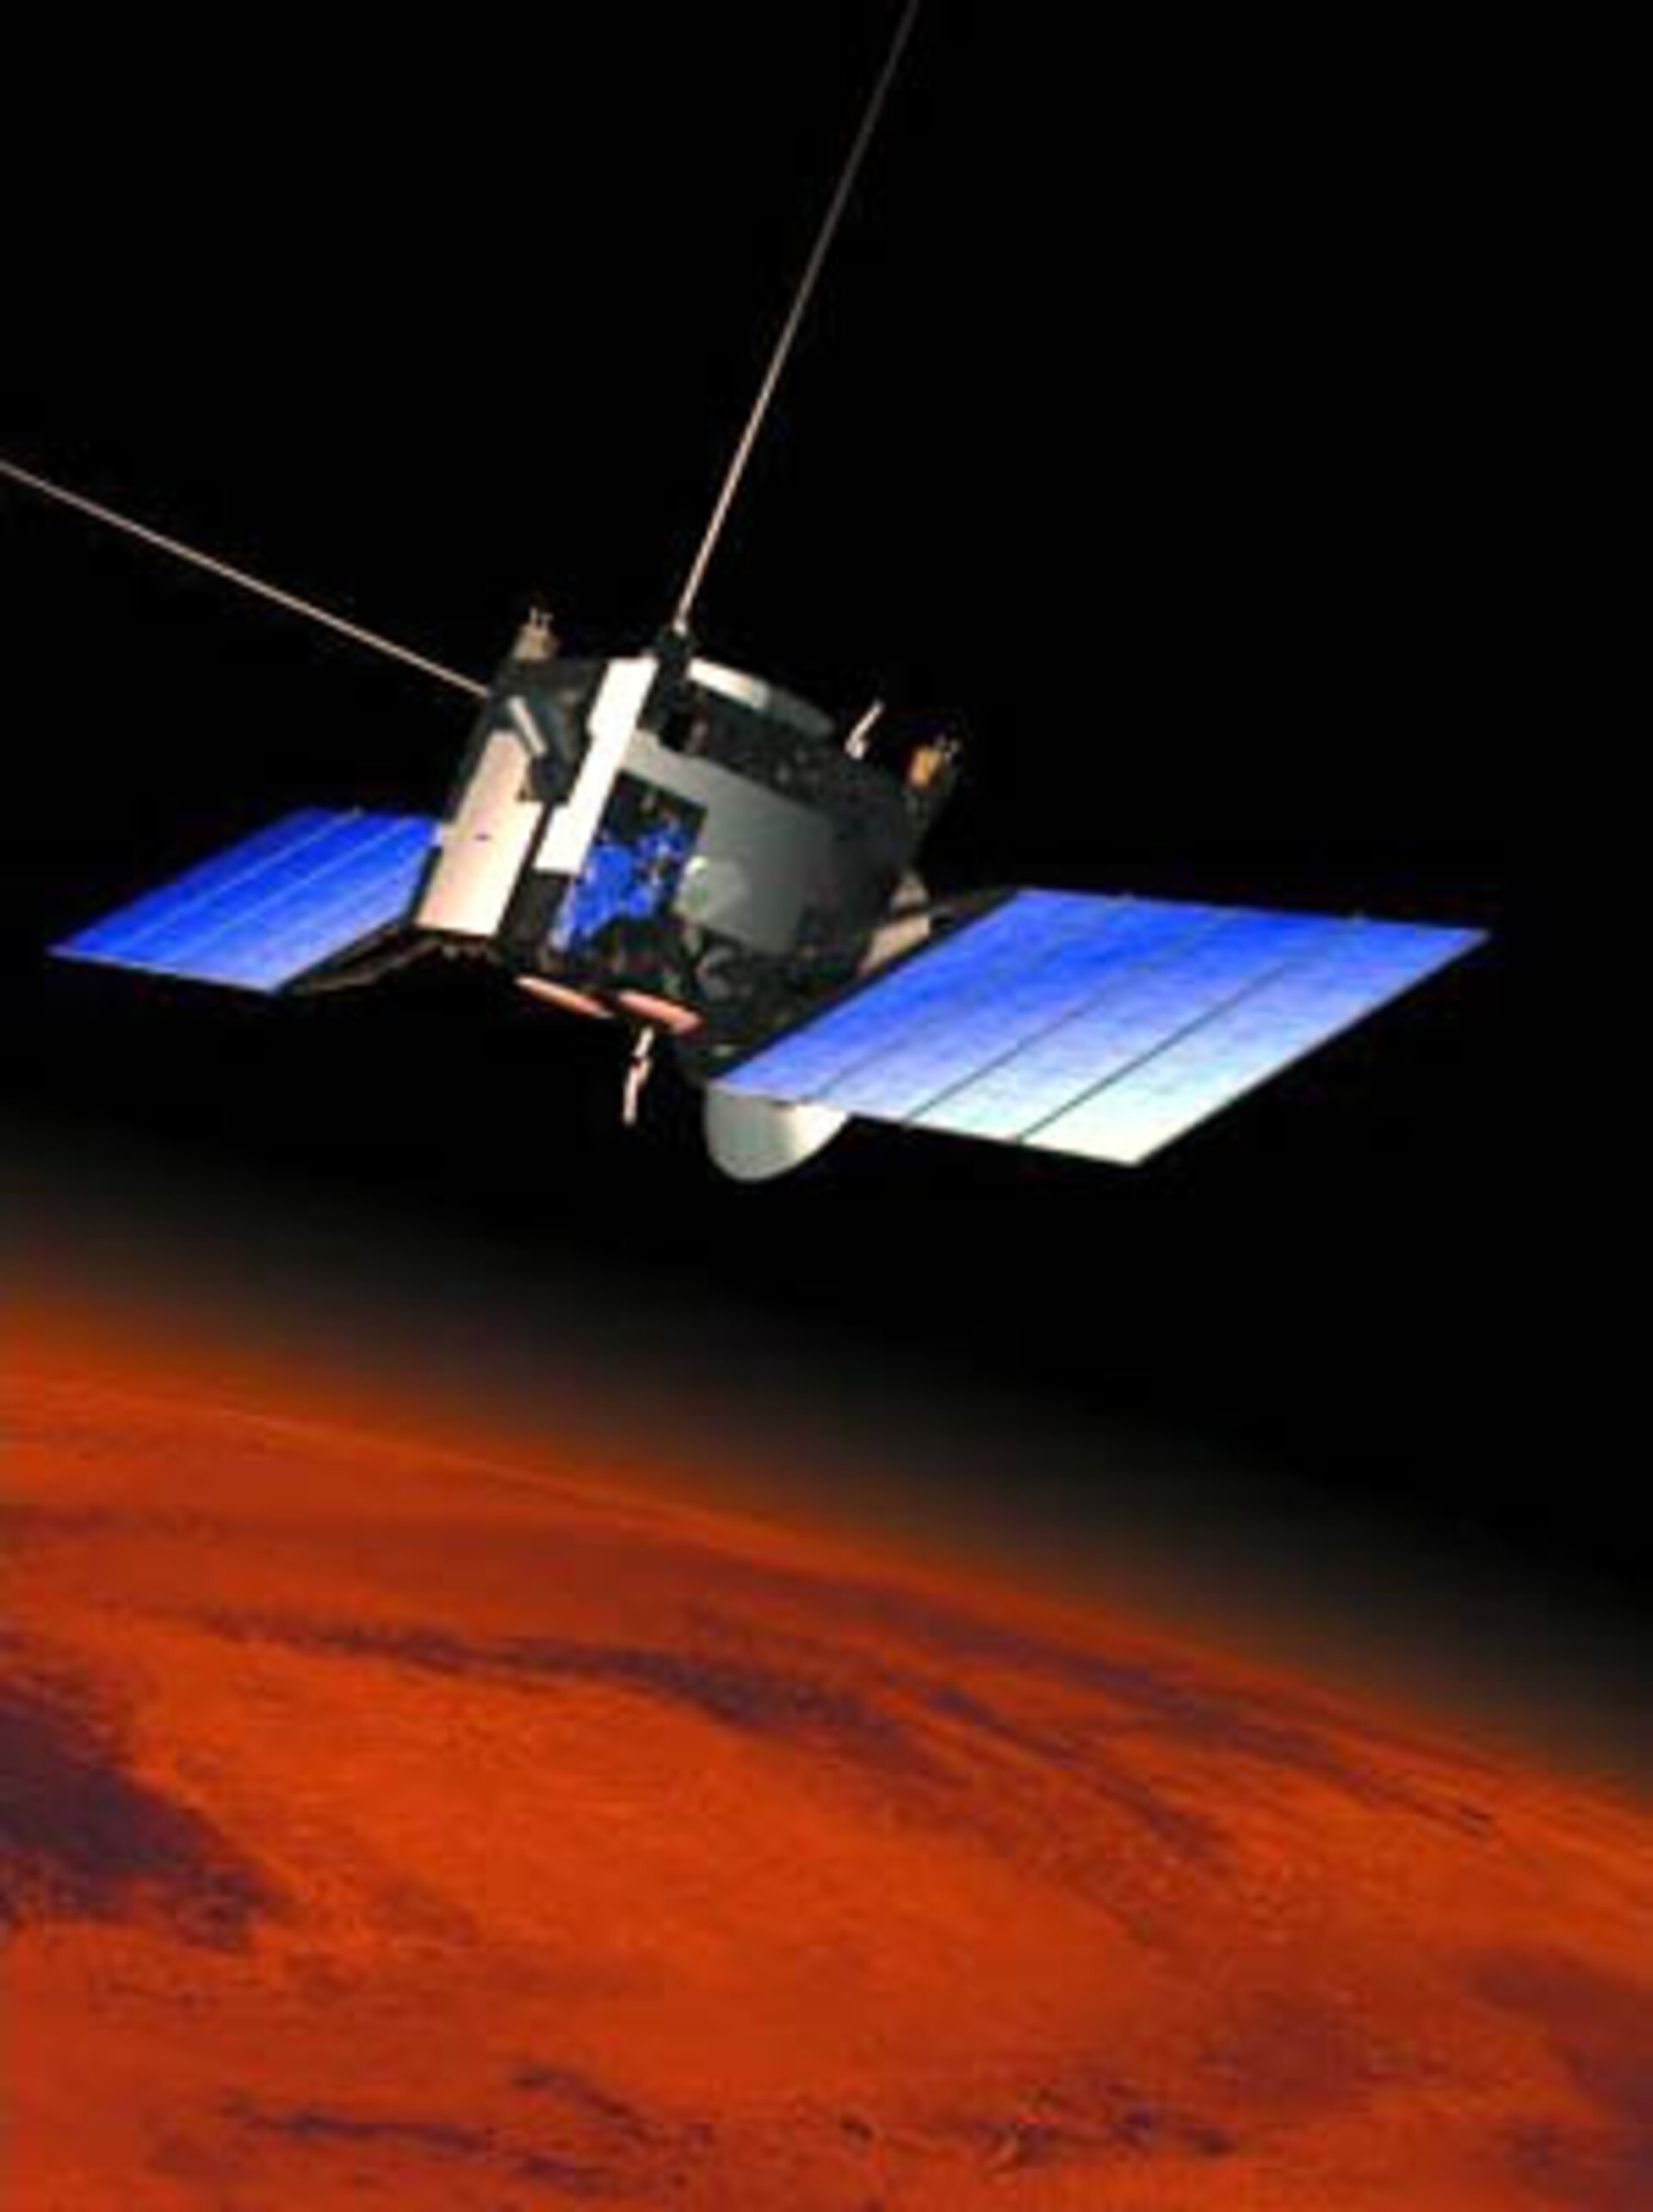 The Mars Express spacecraft in orbit around Mars